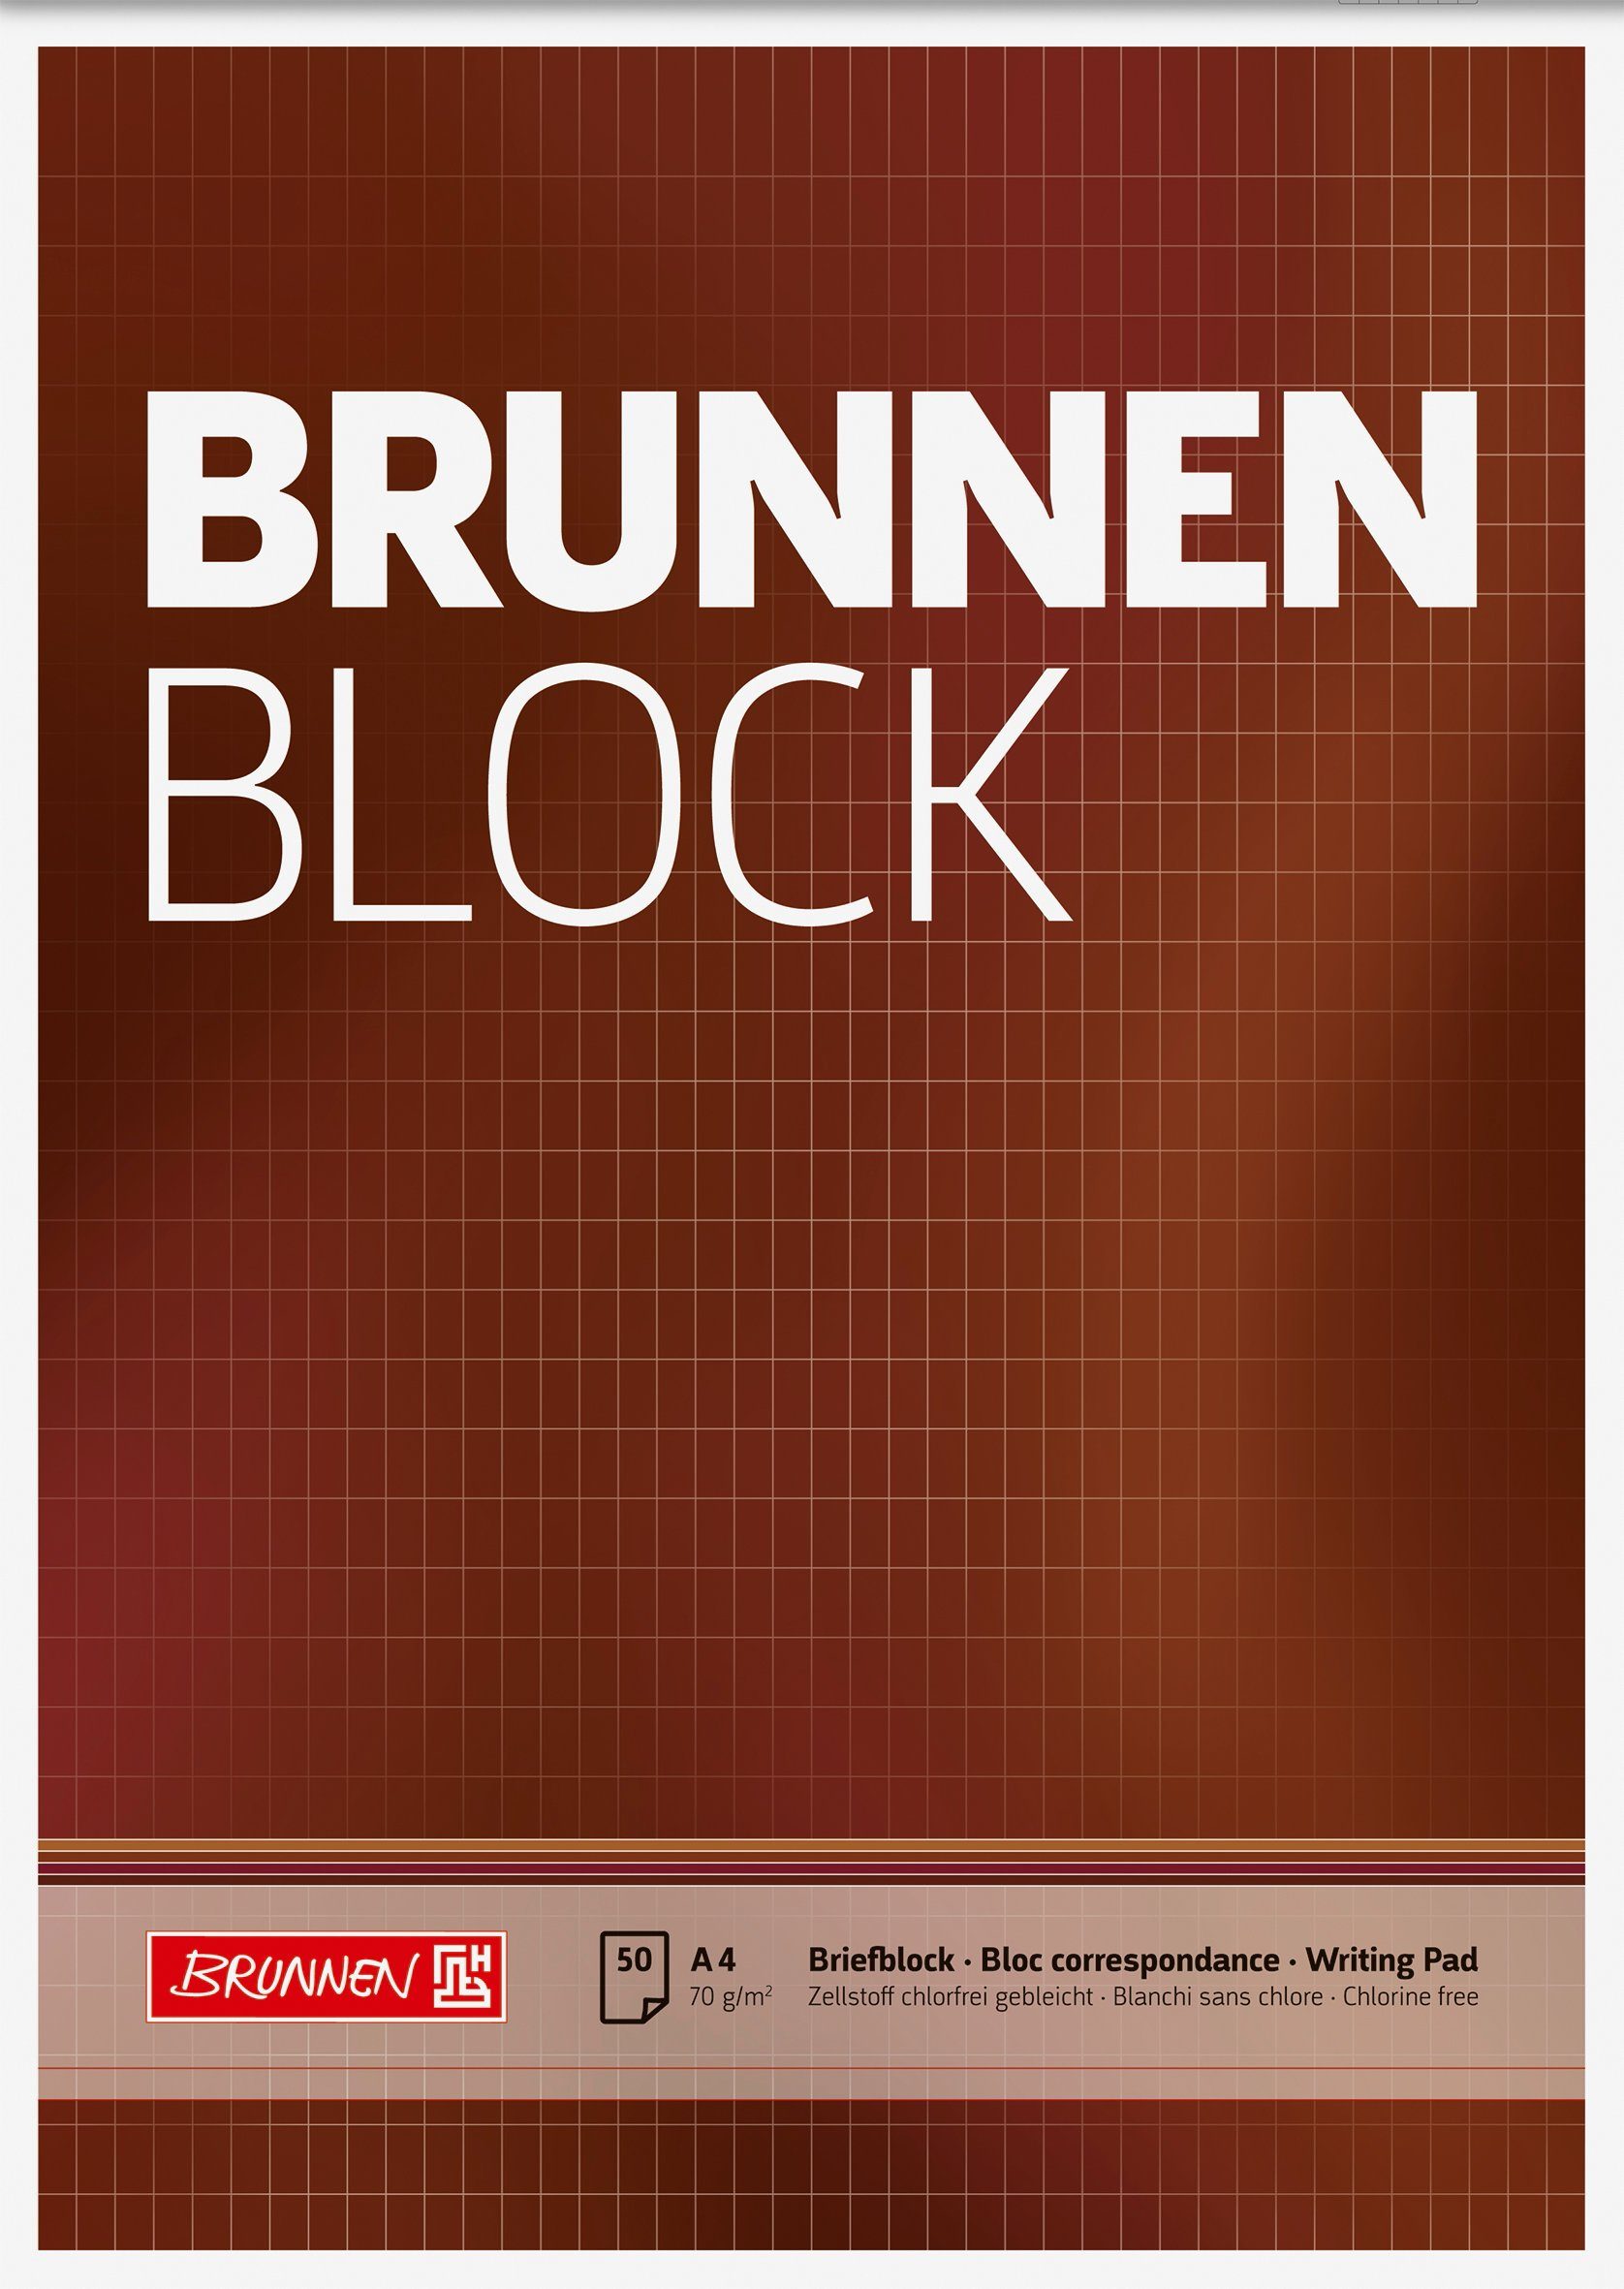 A4 "BRUNNEN-Block" Block 1052729 BRUNNEN rautiert Notizbuch BRUNNEN